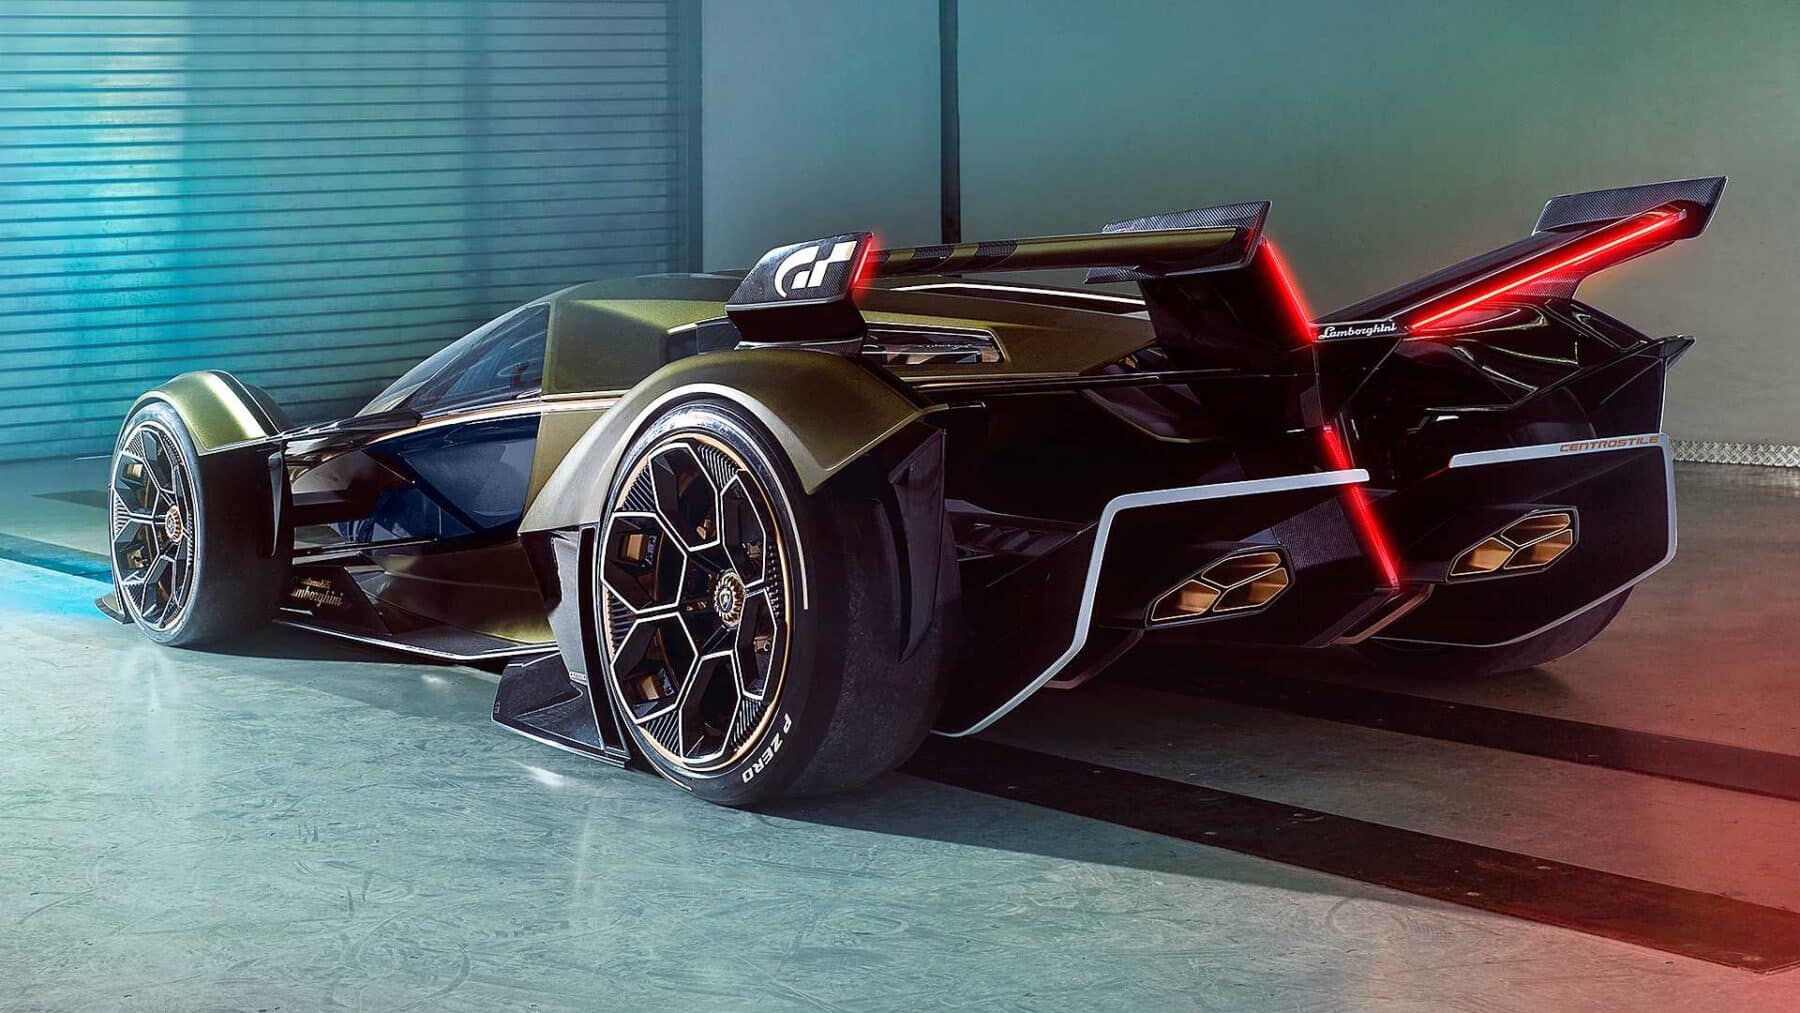 2019 Lamborghini Lambo V12 Vision Gran Turismo Concept